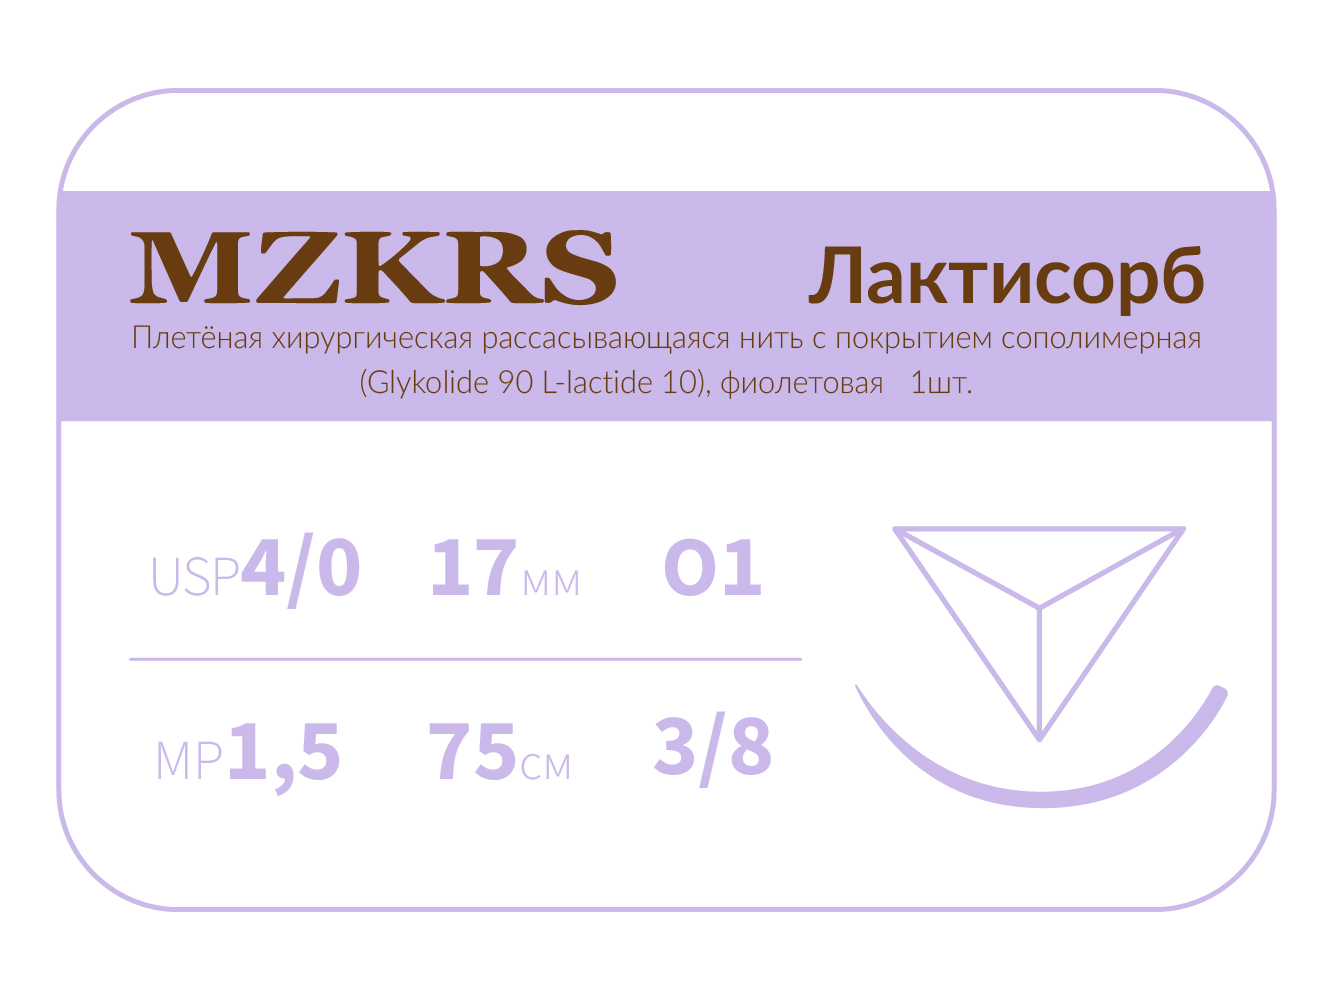 1738О1 Premium -4/0 (1.5)75 ПГЛ ЛАКТИСОРБ хирургическая нить сополимерная, обратно-режущая игла, MZKRS (Россия)